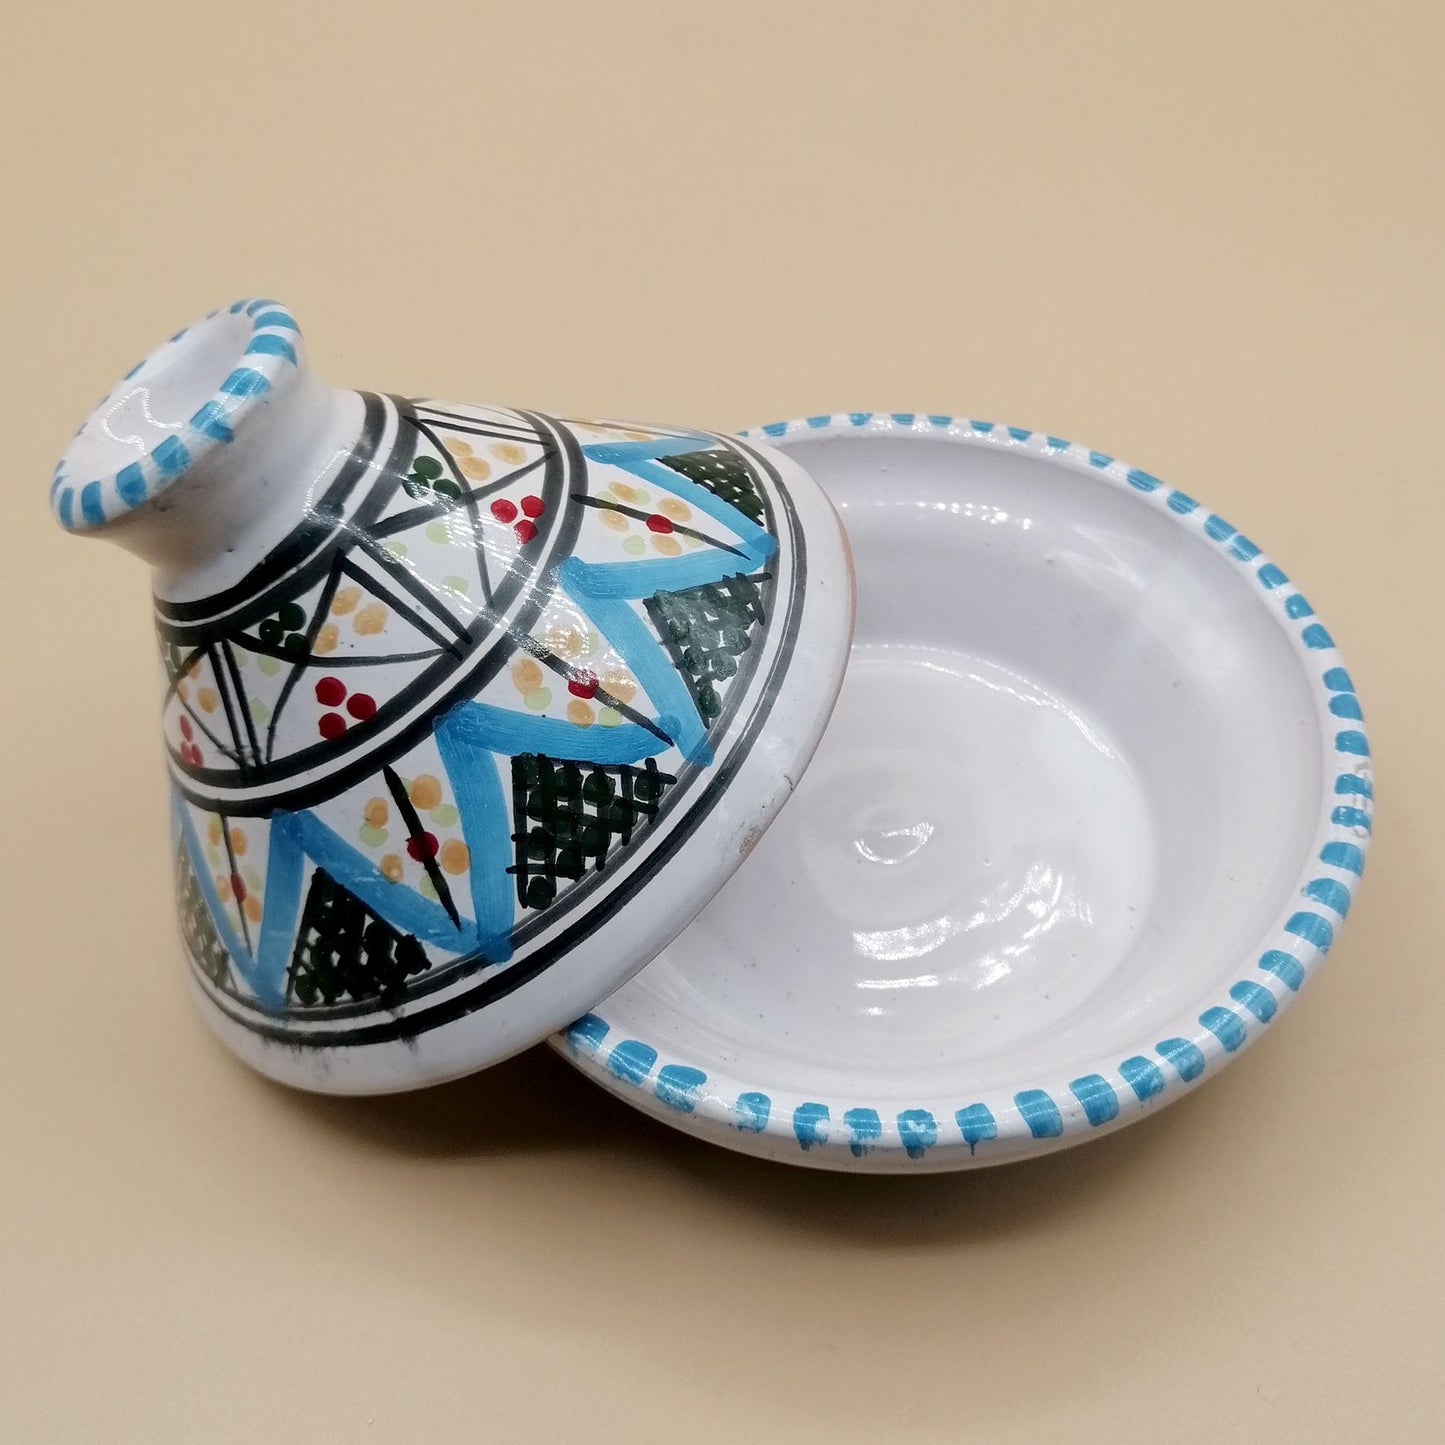 Mini Tajine Etnico Porta Spezie Salse Ceramica Marocchina Tunisina 1211201234